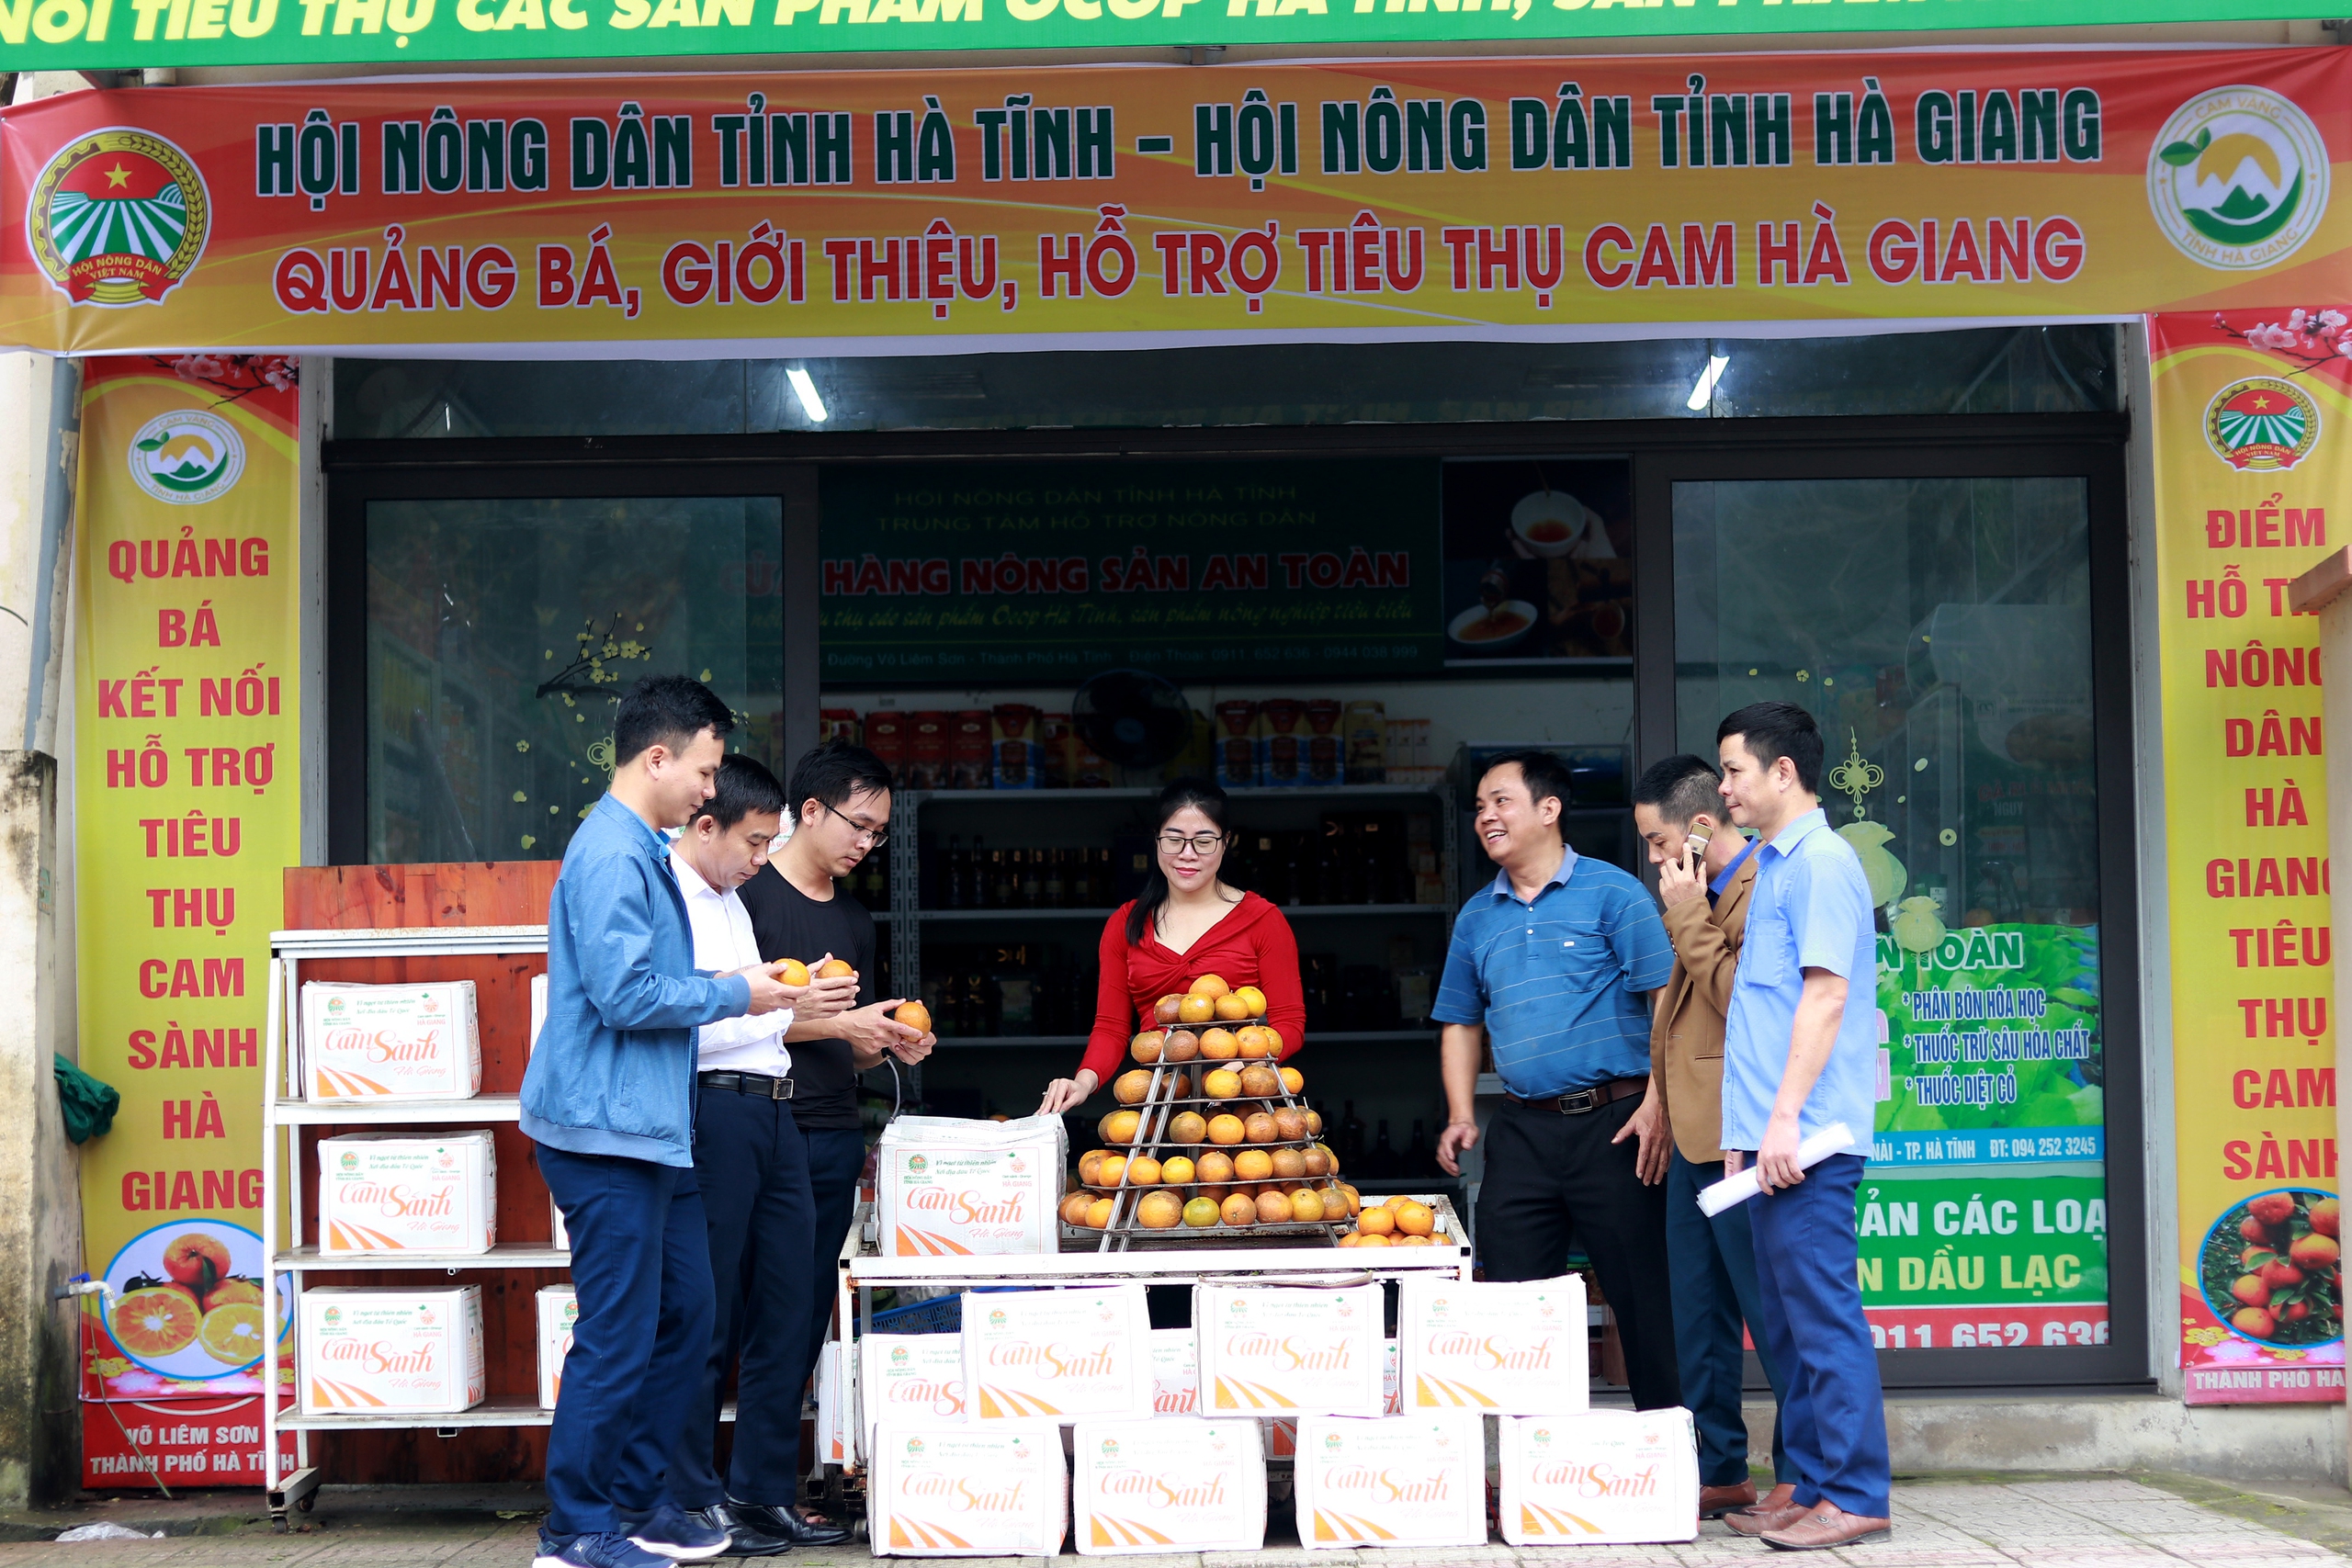 Hội Nông dân Hà Tĩnh hỗ trợ tiêu thụ 18 tấn cam sành cho nông dân Hà Giang - Ảnh 1.